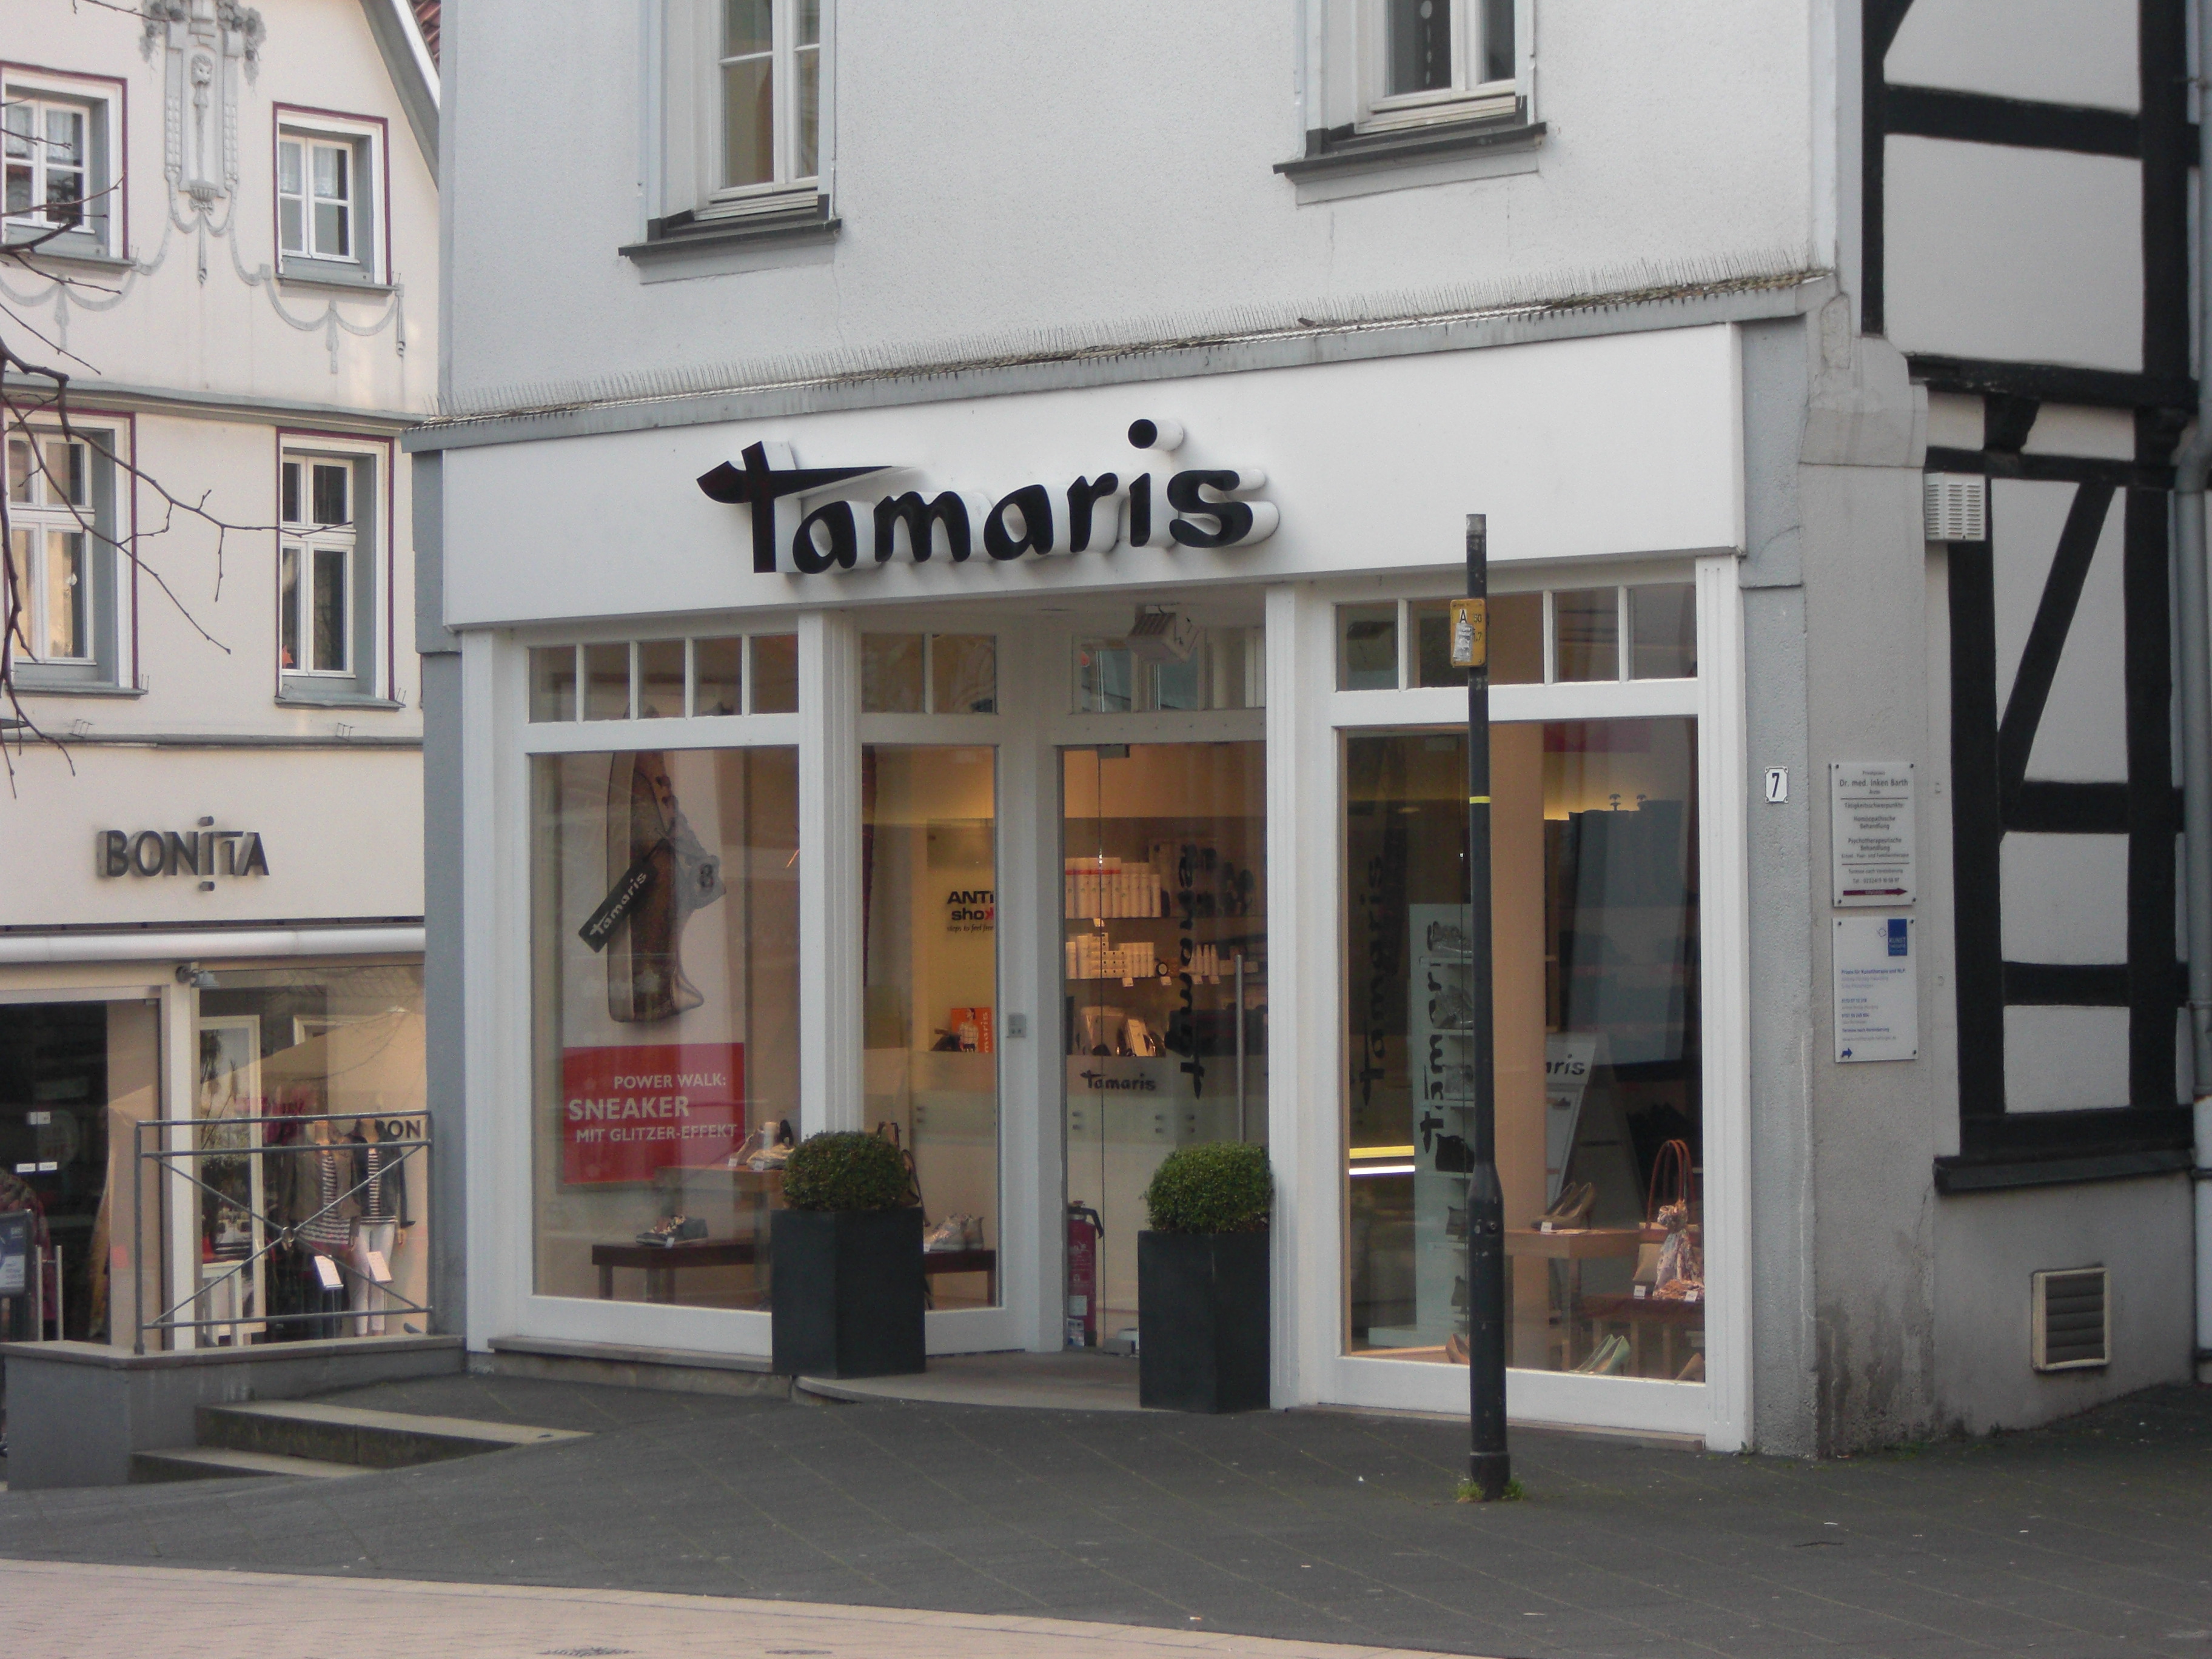 Tamaris in Hattingen, am Treidelbrunnen, Obermarkt